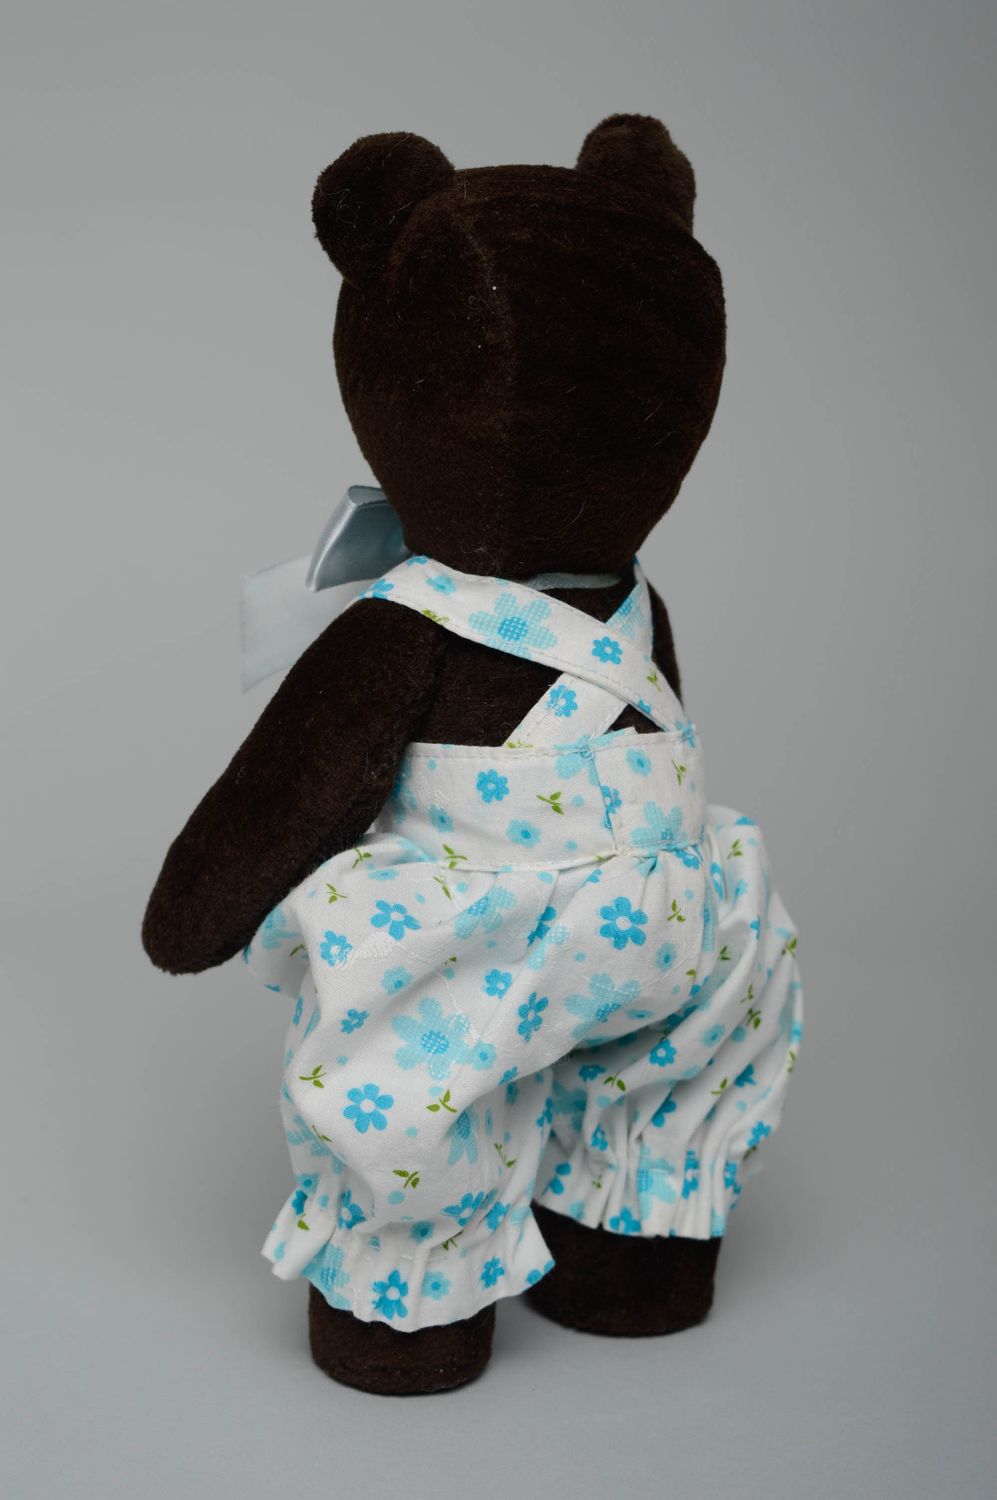 Textil Kuscheltier Bär im Anzug foto 5